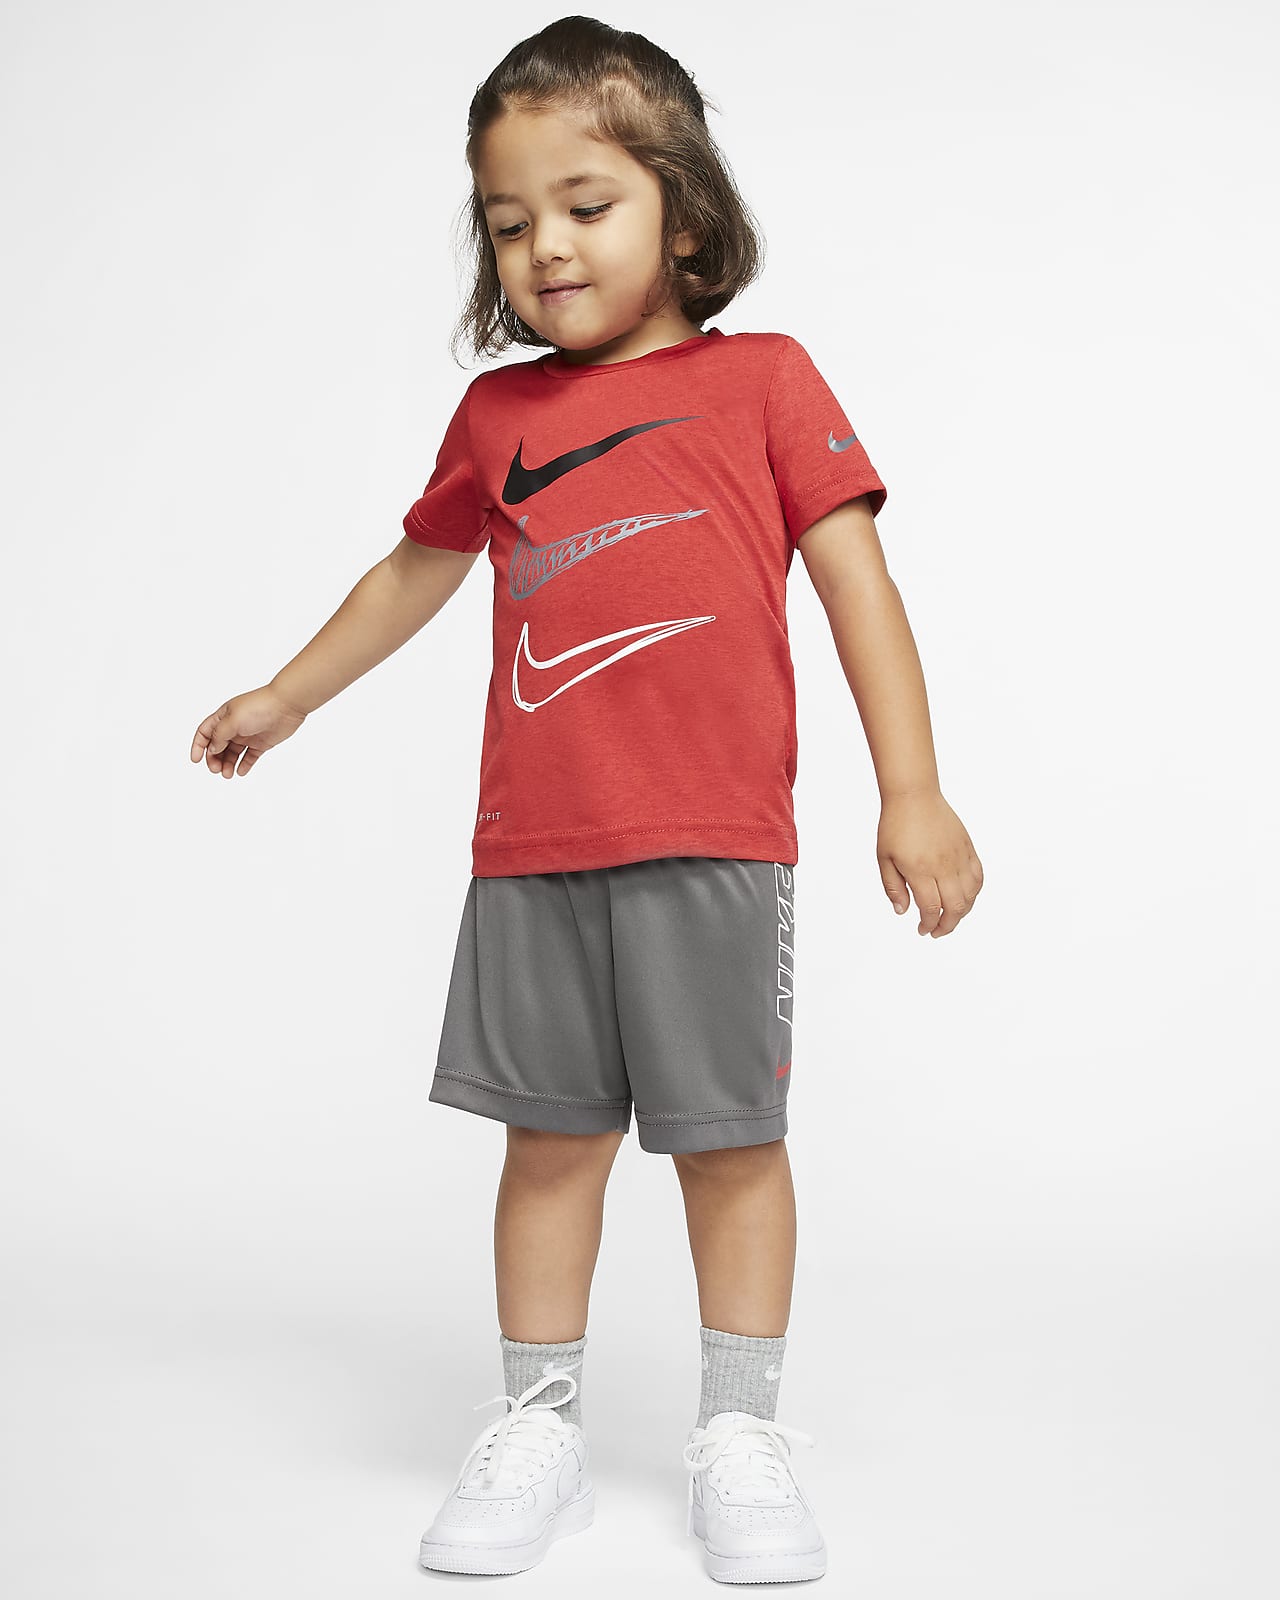 Nike Boxy Tee and Bike Shorts Set Toddler Set